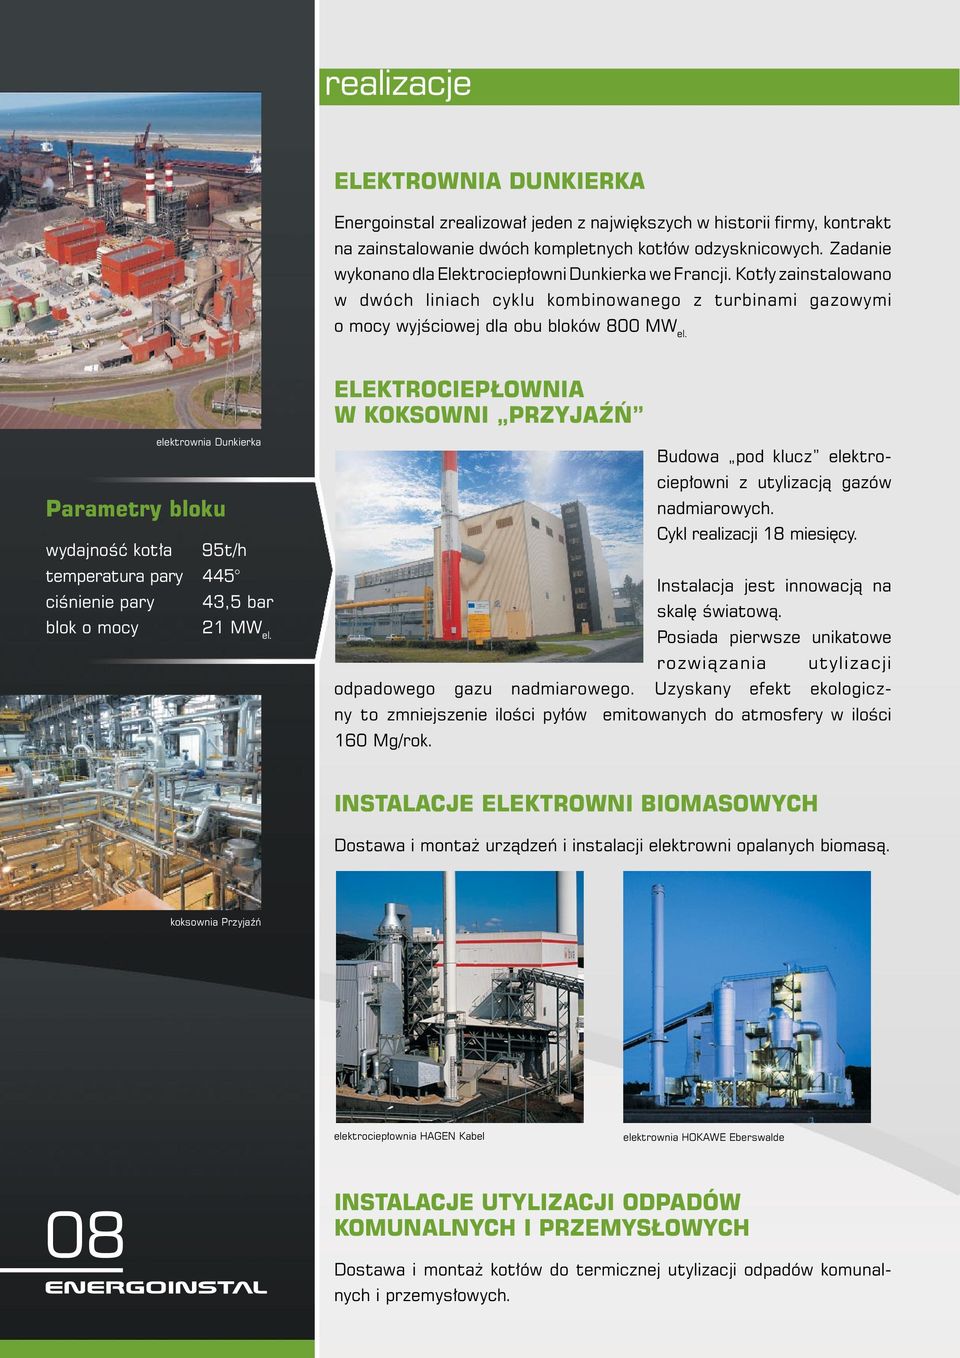 ELEKTROCIEPŁOWNIA W KOKSOWNI PRZYJAŹŃ elektrownia Dunkierka Parametry bloku wydajność kotła 95t/h temperatura pary 445 ciśnienie pary 43,5 bar blok o mocy 21 MW el.